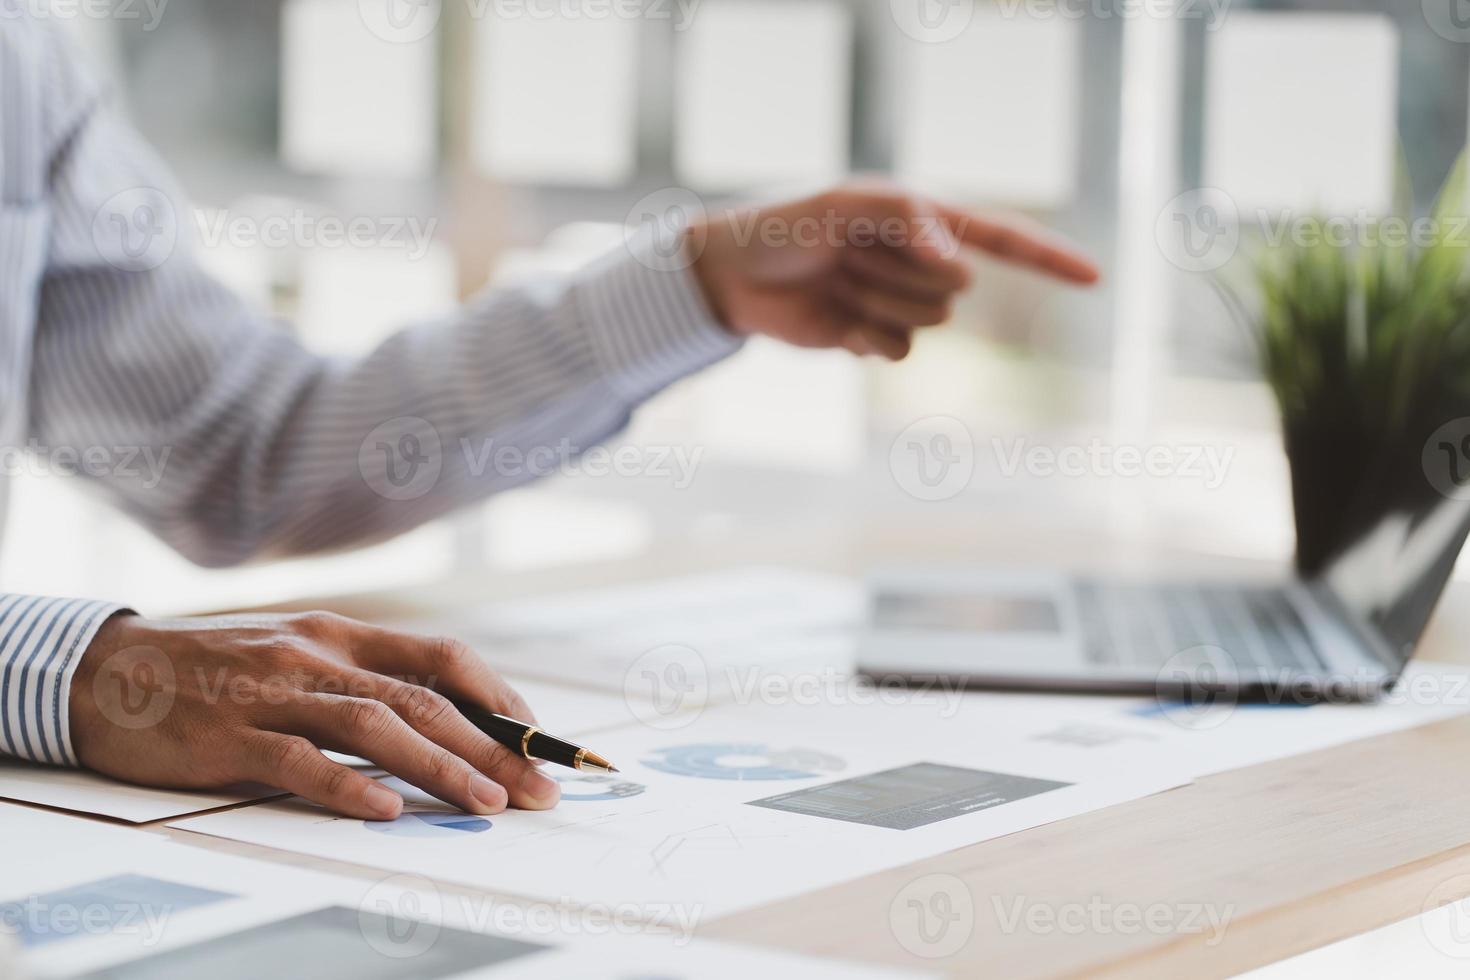 chefen använder en bärbar dator medan han analyserar företagets bokslut på skärmen. foto